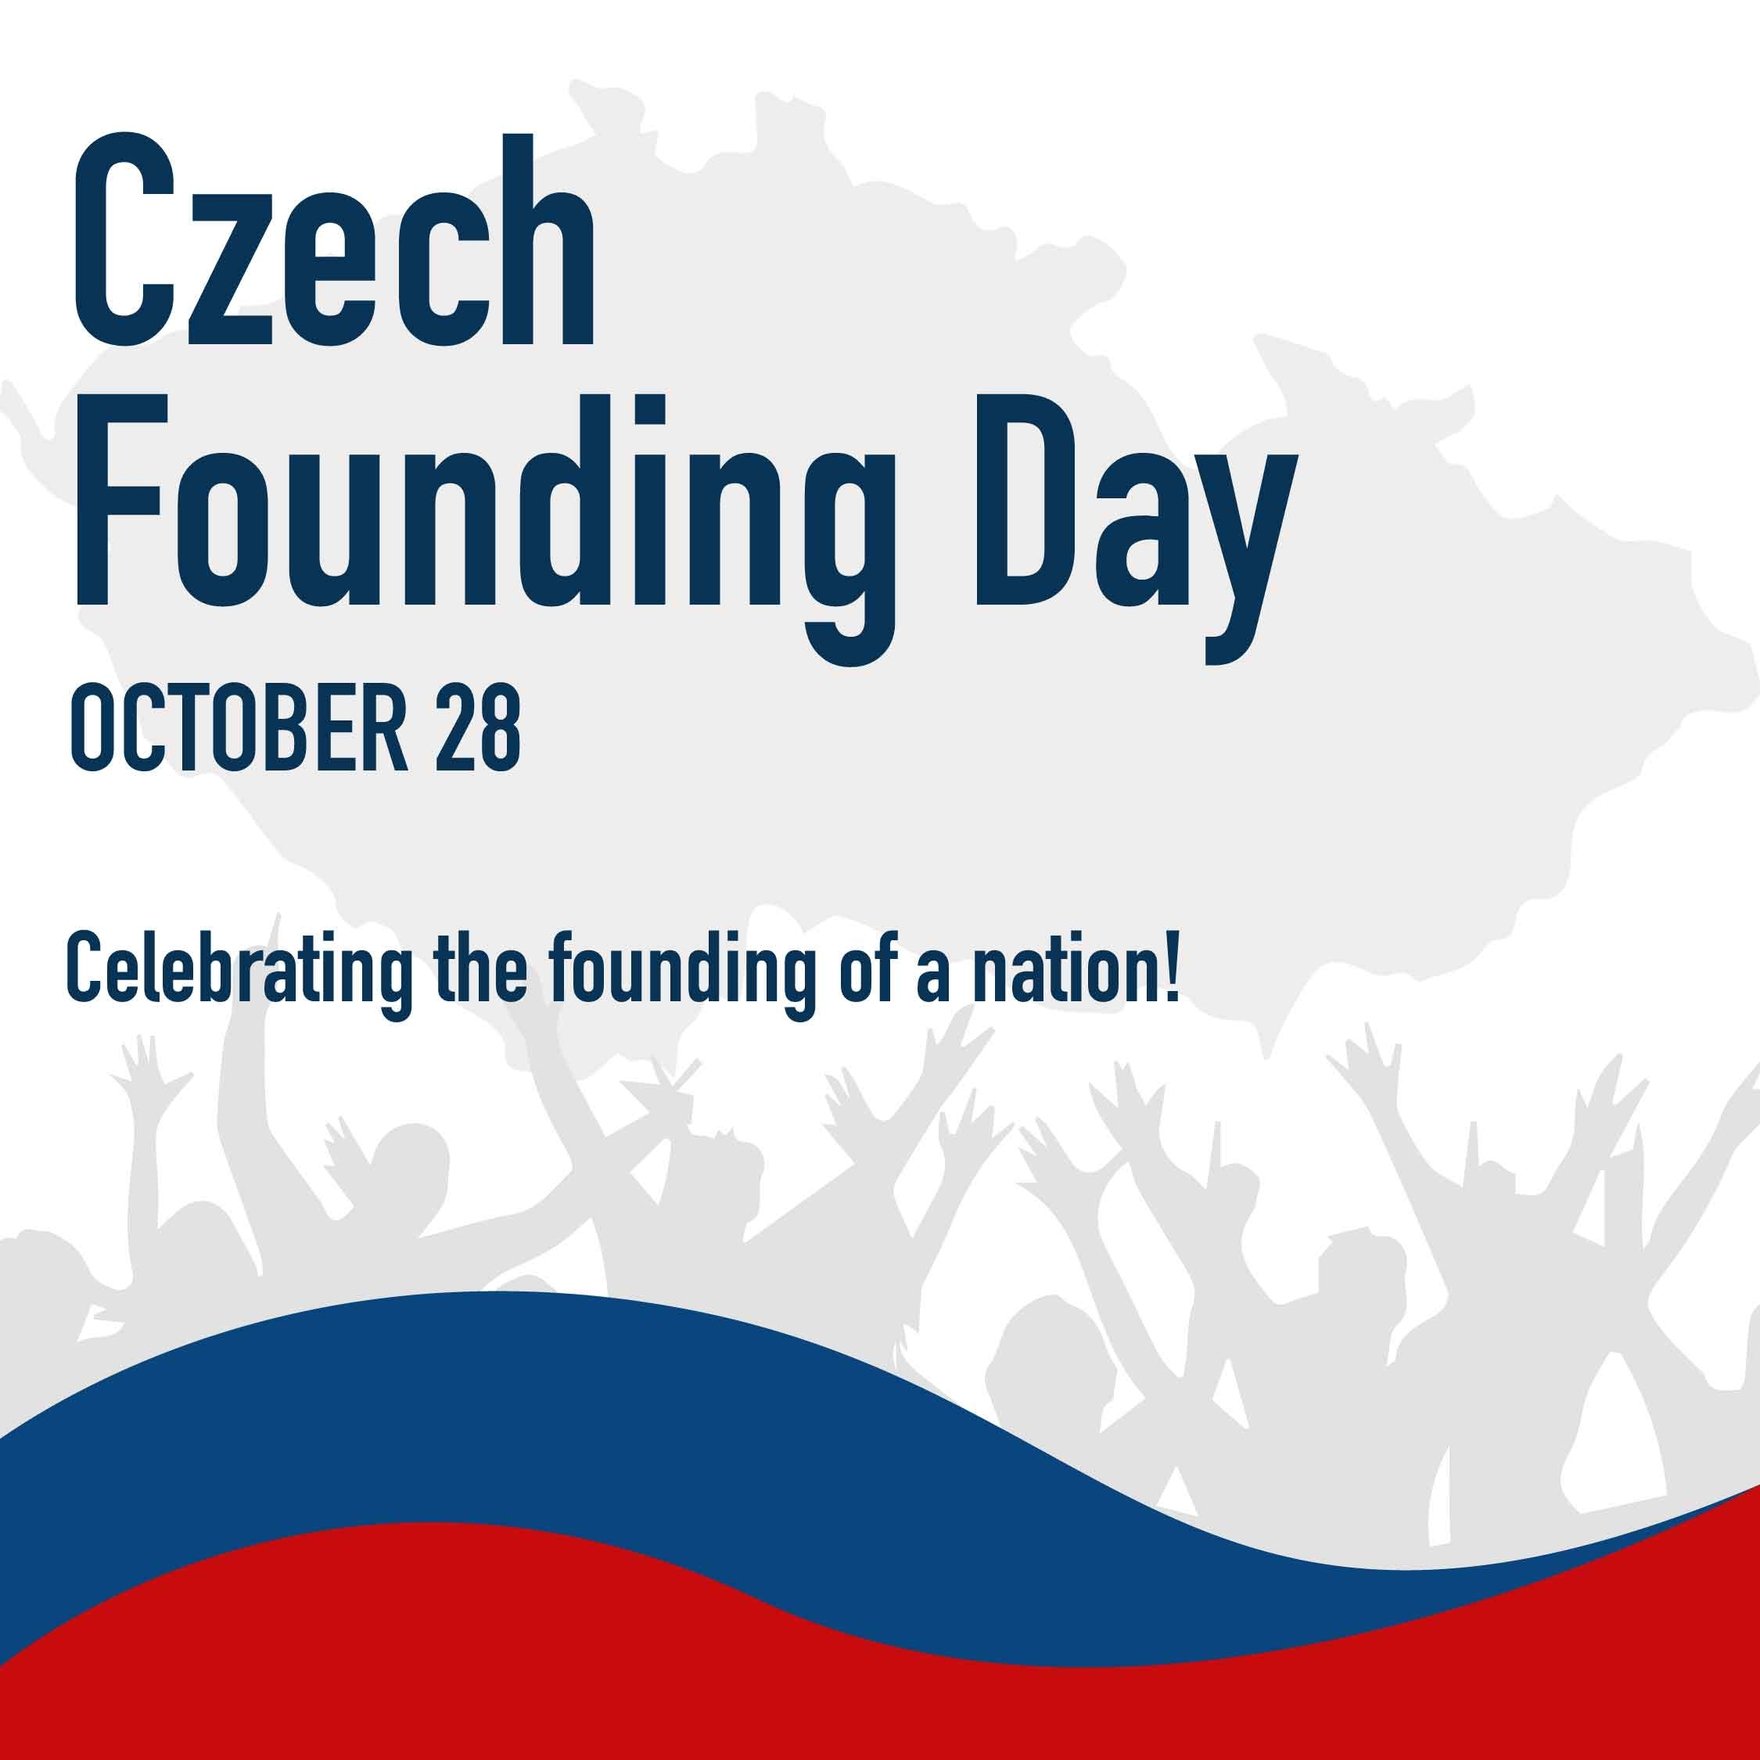 Free Czech Founding Day Instagram Post in Illustrator, PSD, EPS, SVG, JPG, PNG